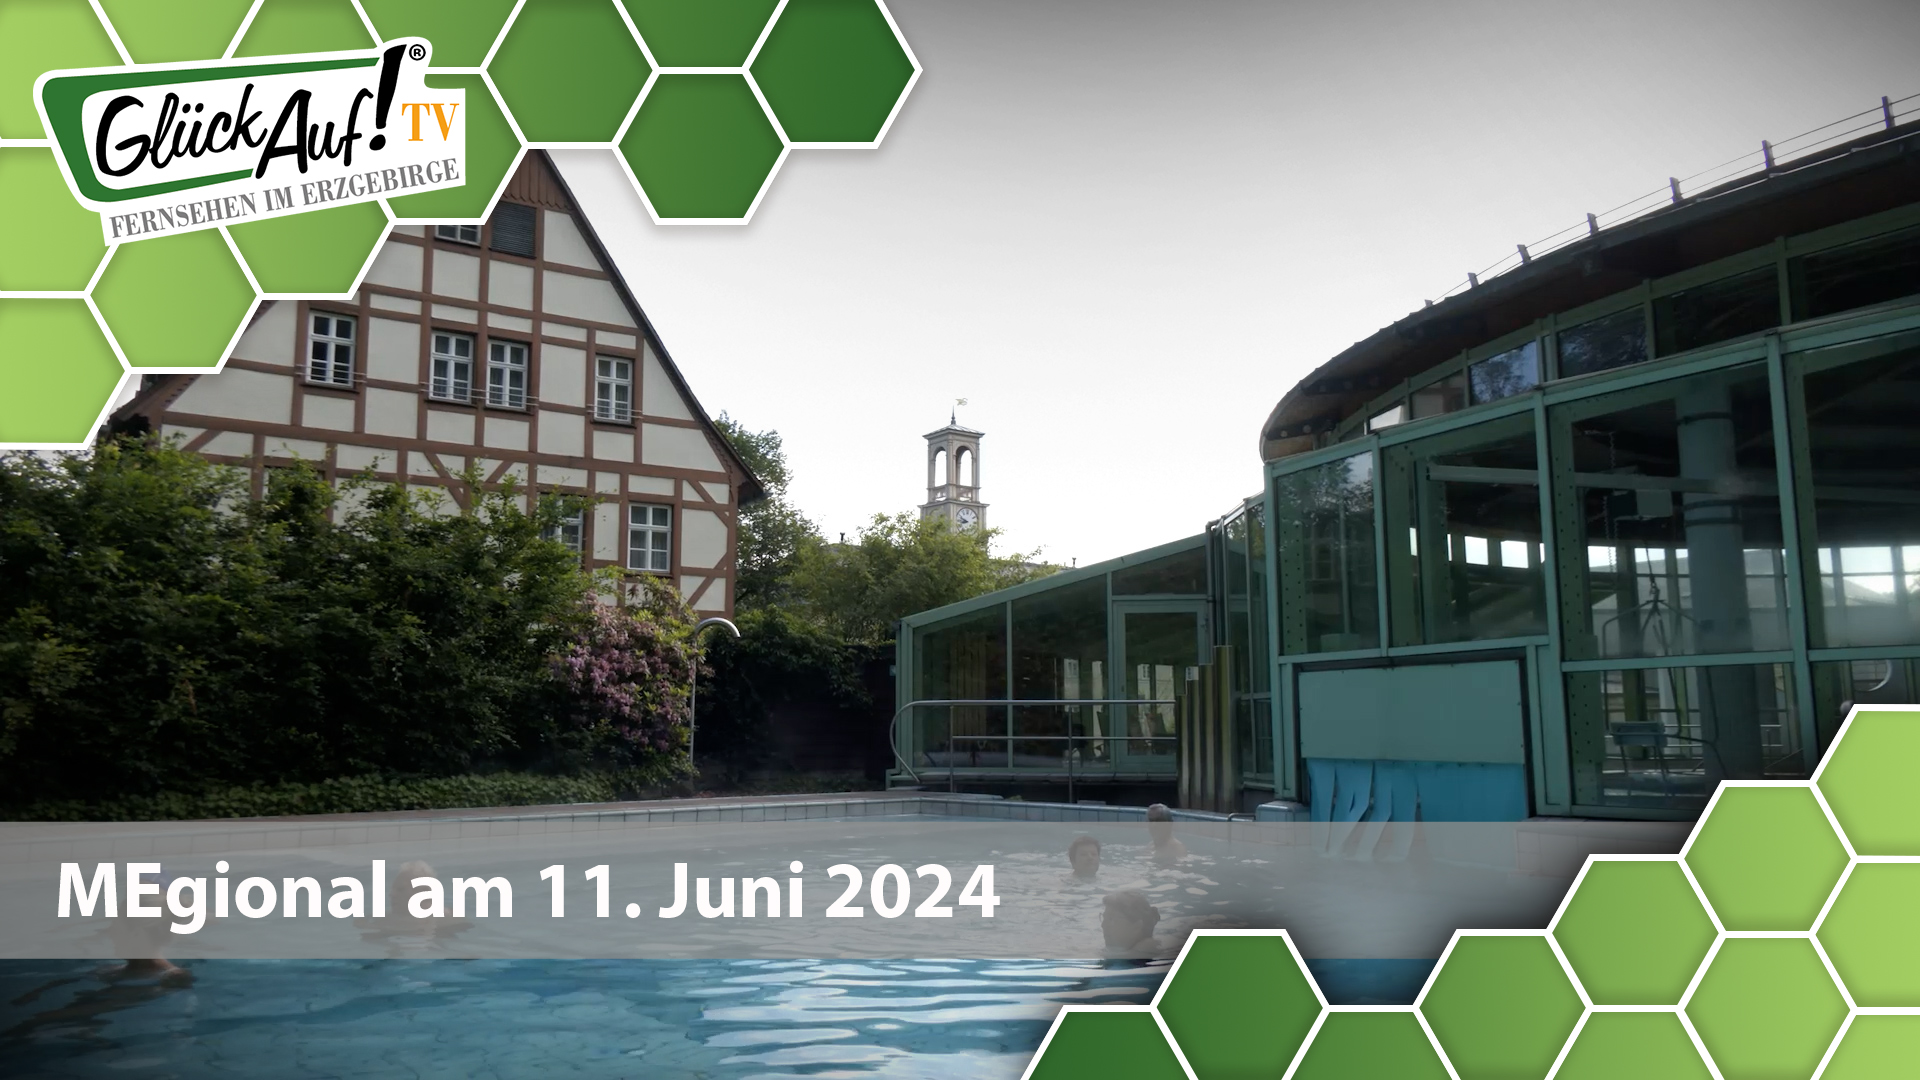 MEgional am 11. Juni 2024 mit Kur- und Erholungsorte für den Tourismus in Sachsen